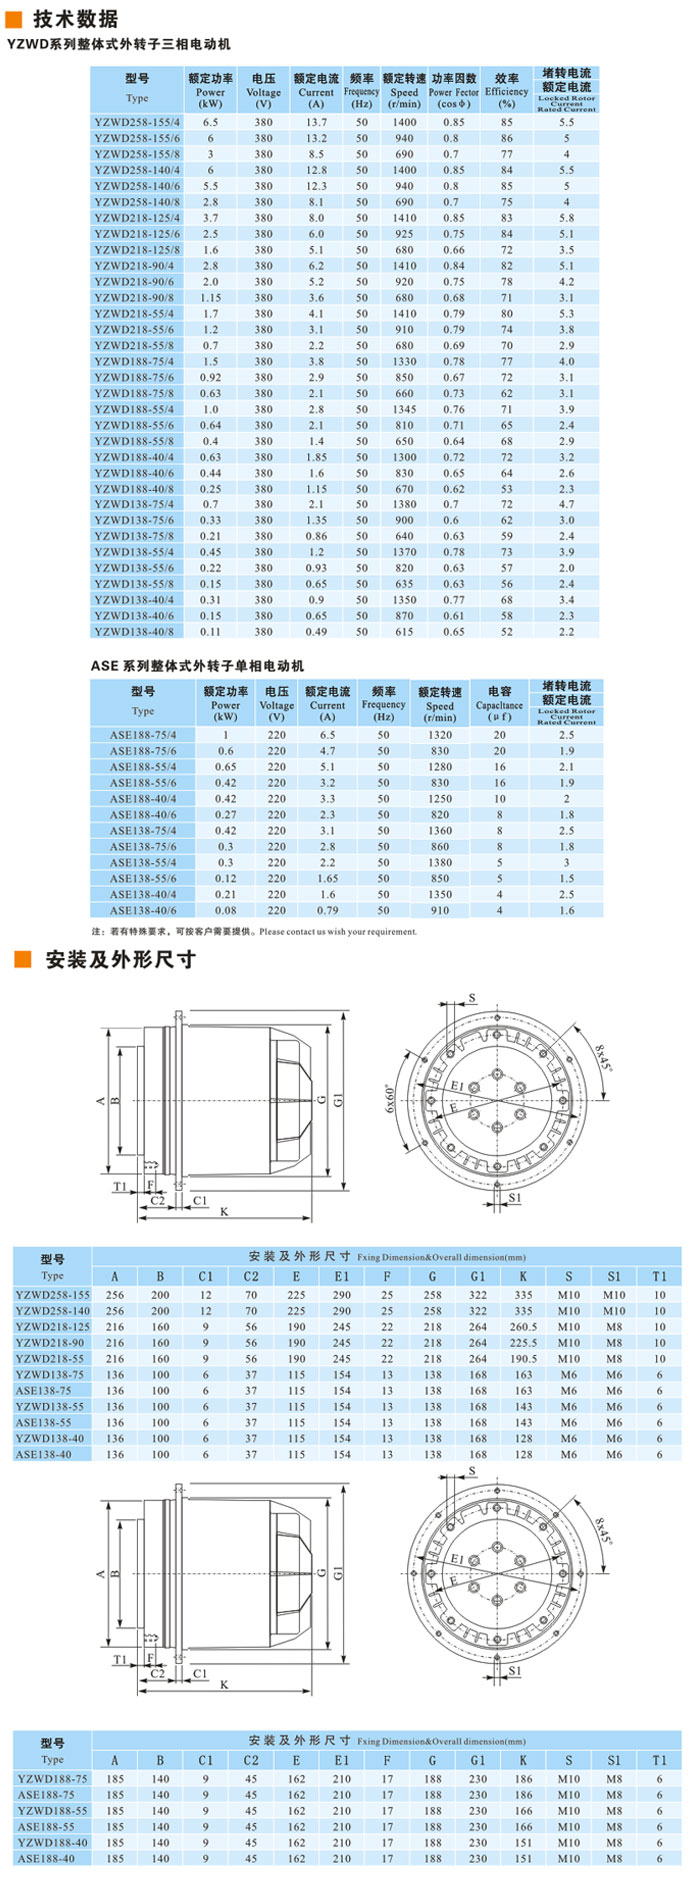 【九洲风机】YZWD-ASD系列整体式体外转子电动机厂家直销批发价格